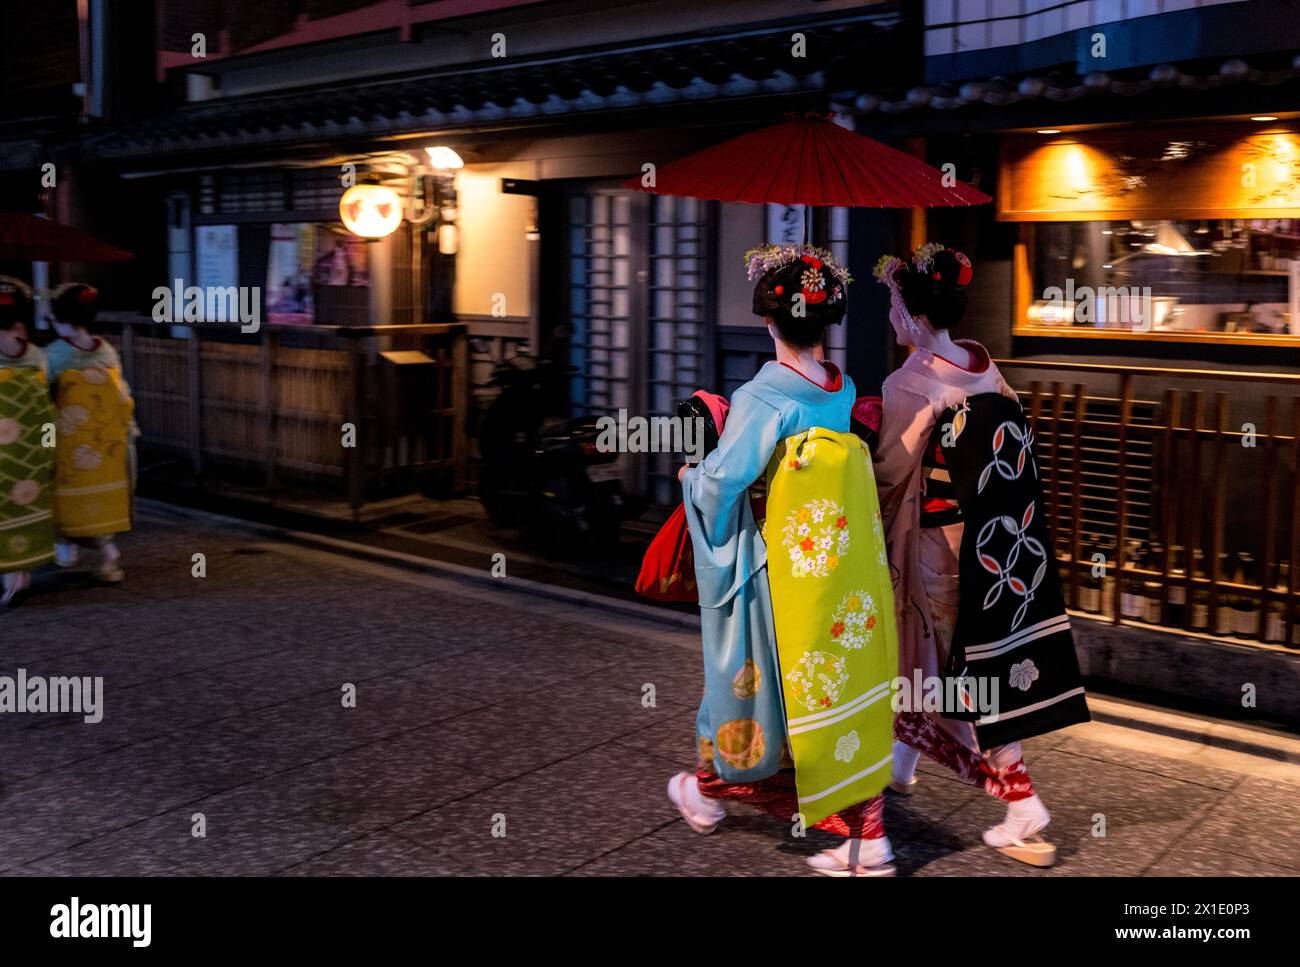 Japon - les Geishas rentrent chez eux le soir dans le quartier des divertissements de Kyoto vêtus de kimonos traditionnels Banque D'Images